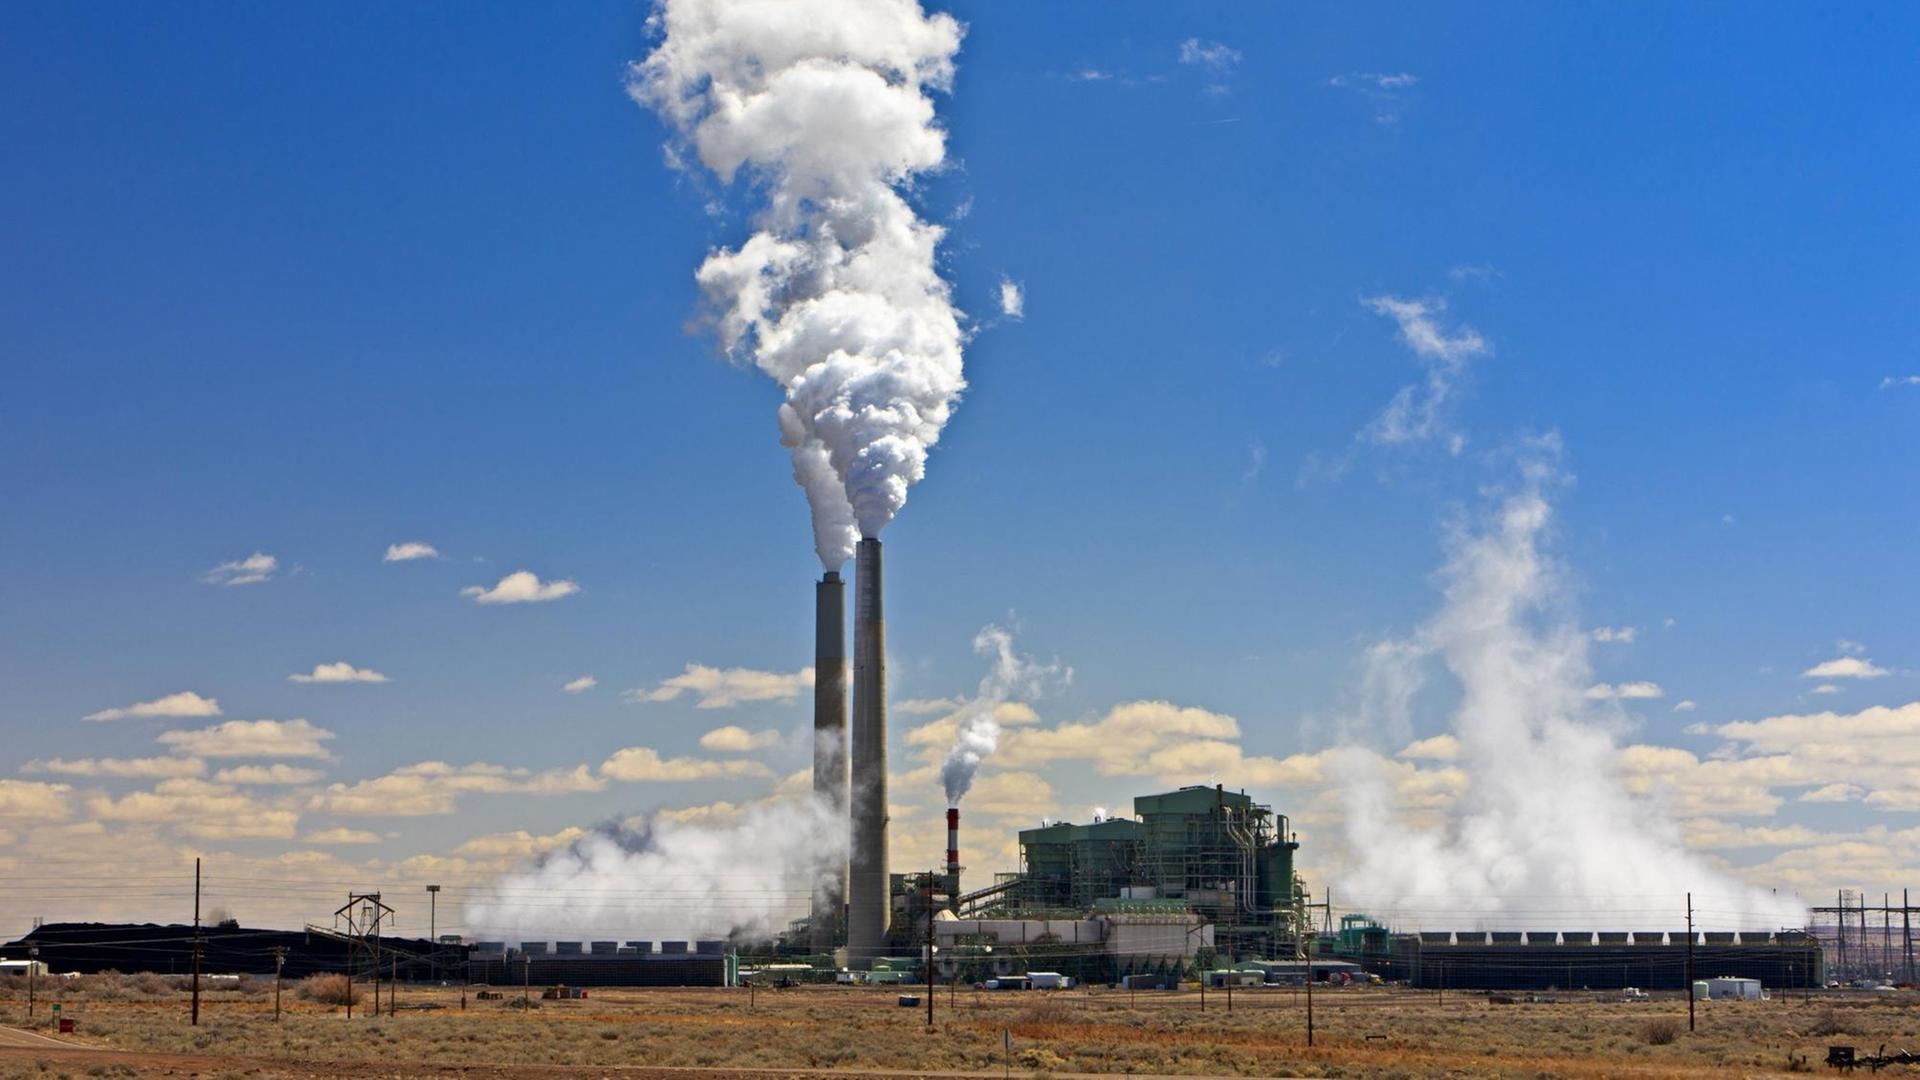 Die rauchenden Schornsteine des Kohlekraftwerks Cholla Power Plant in Arizona, USA.